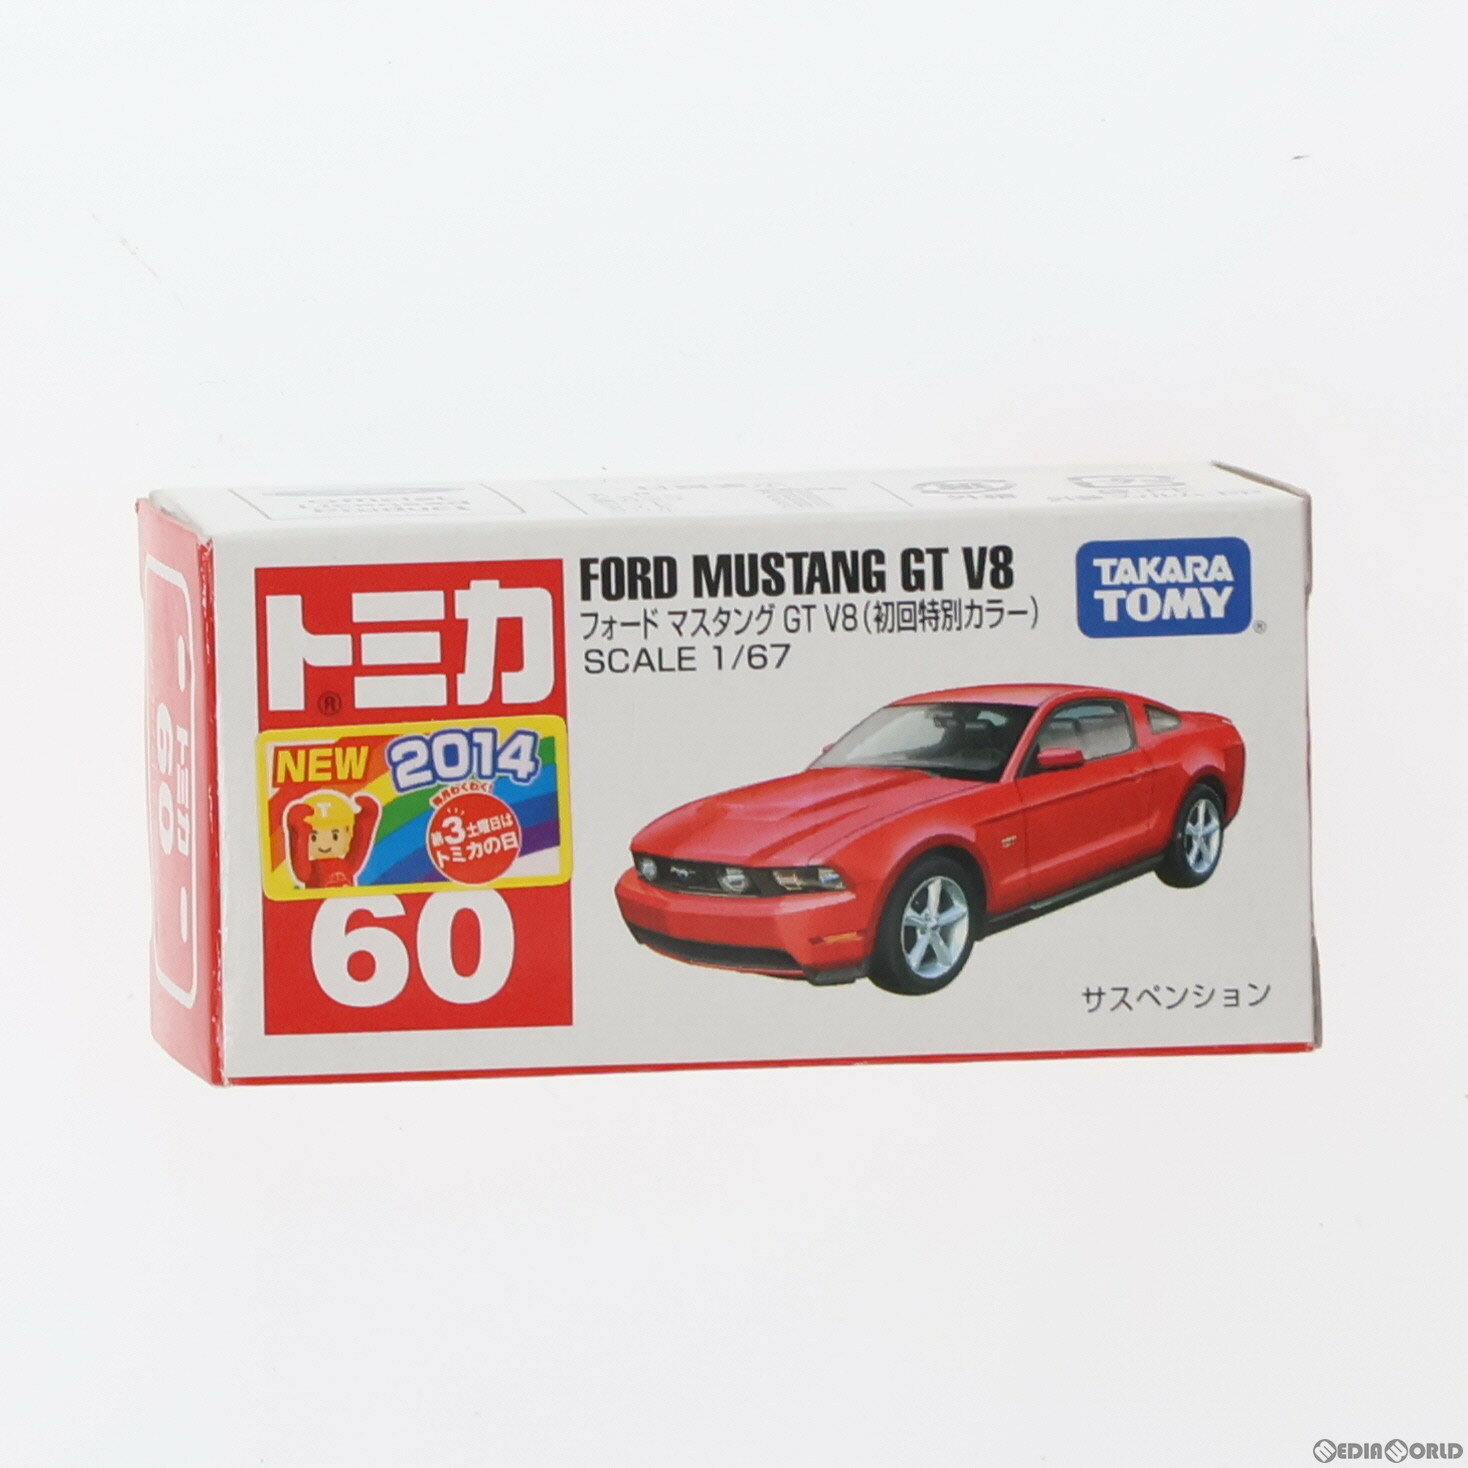 【中古】[MDL]トミカ No.60 フォード マスタング GT V8 初回特別カラー(レッド) 完成品 ミニカー タカラトミー(20140719)